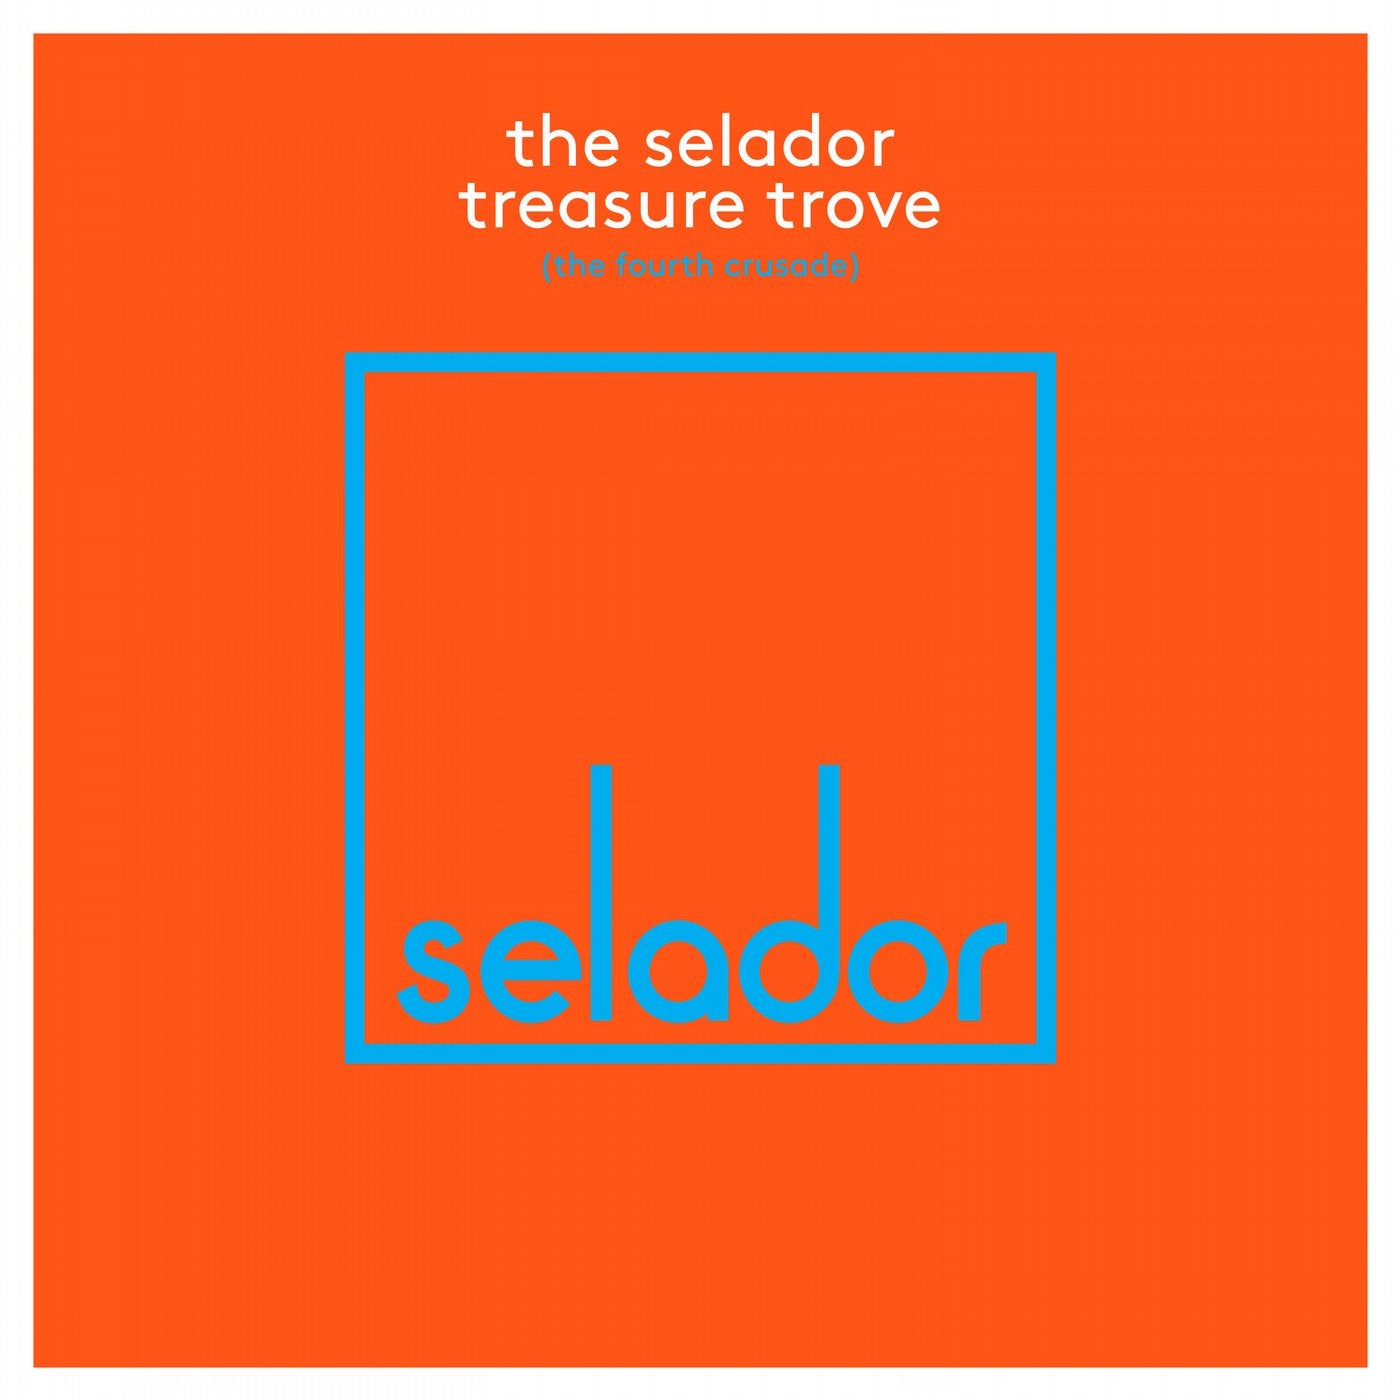 The Selador Treasure Trove (The Fourth Crusade)